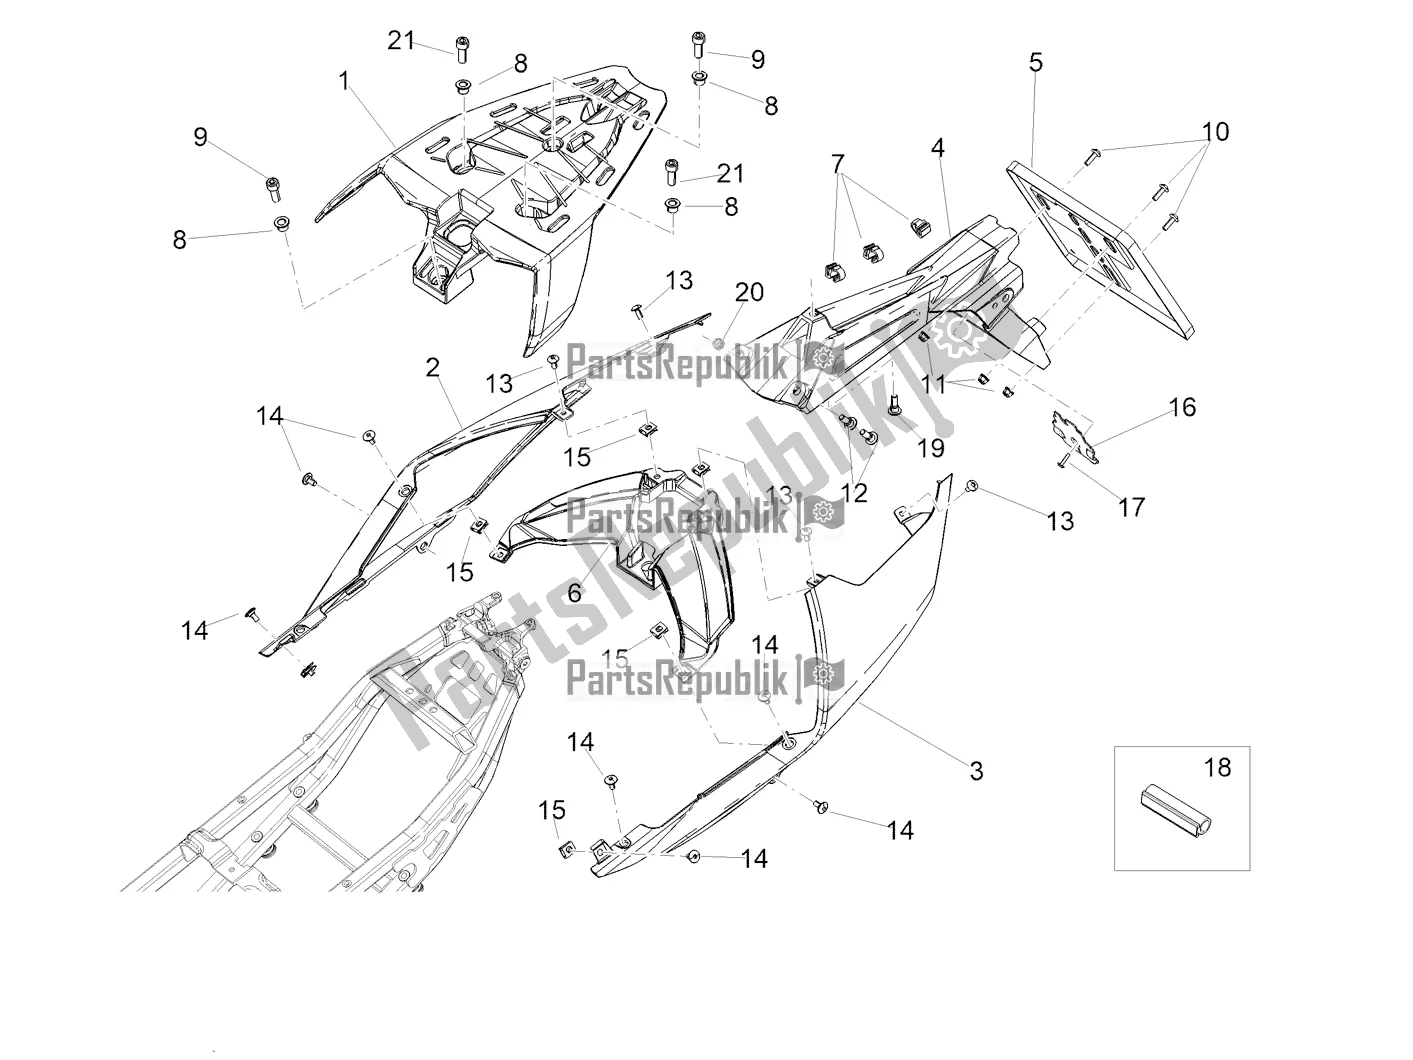 All parts for the Rear Body of the Aprilia Tuono 660 Apac 2022